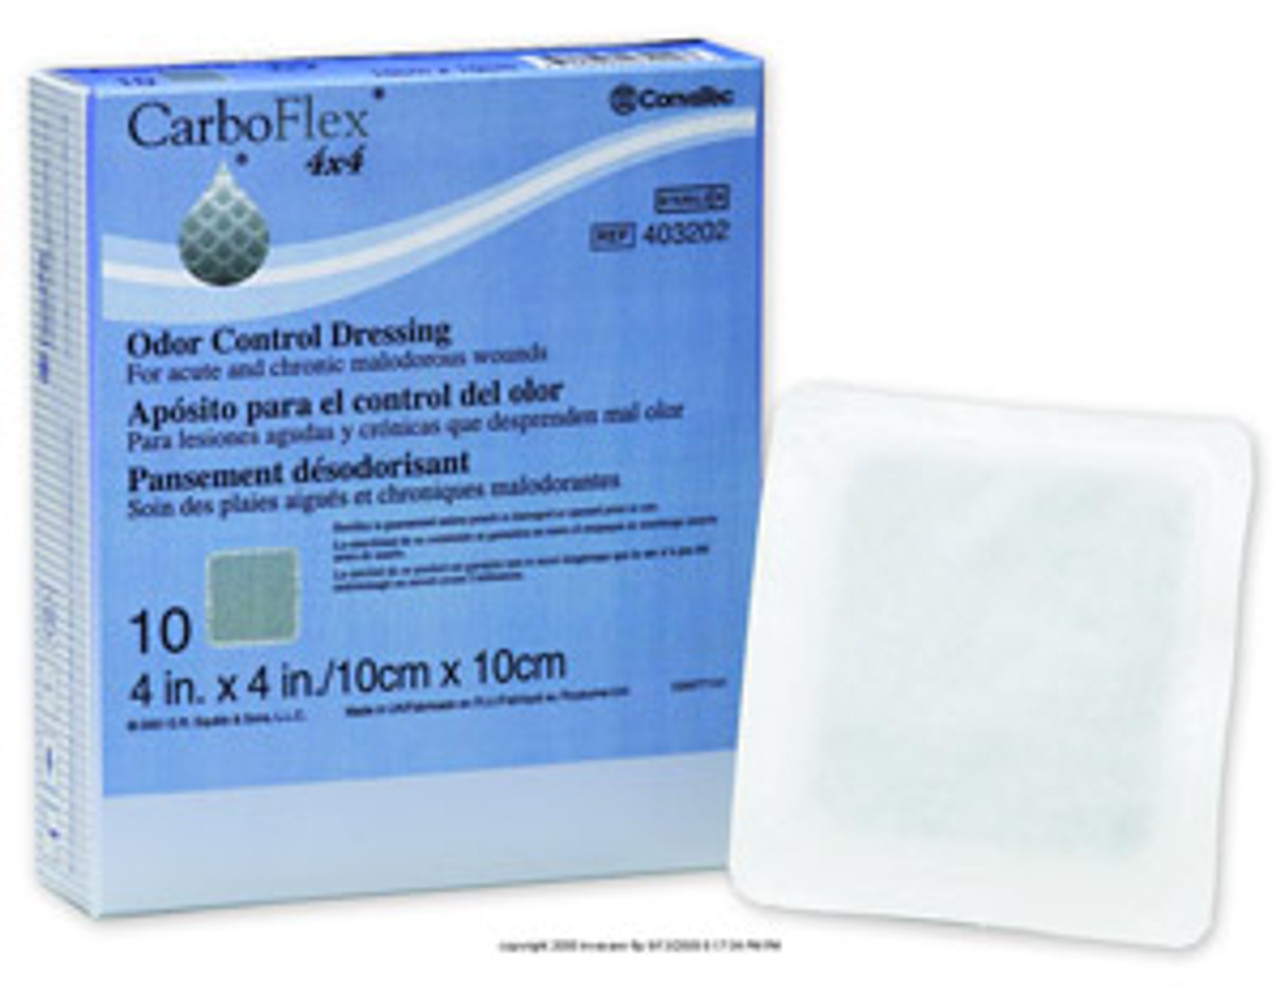 CarboFlex&trade; Odor Control Dressing